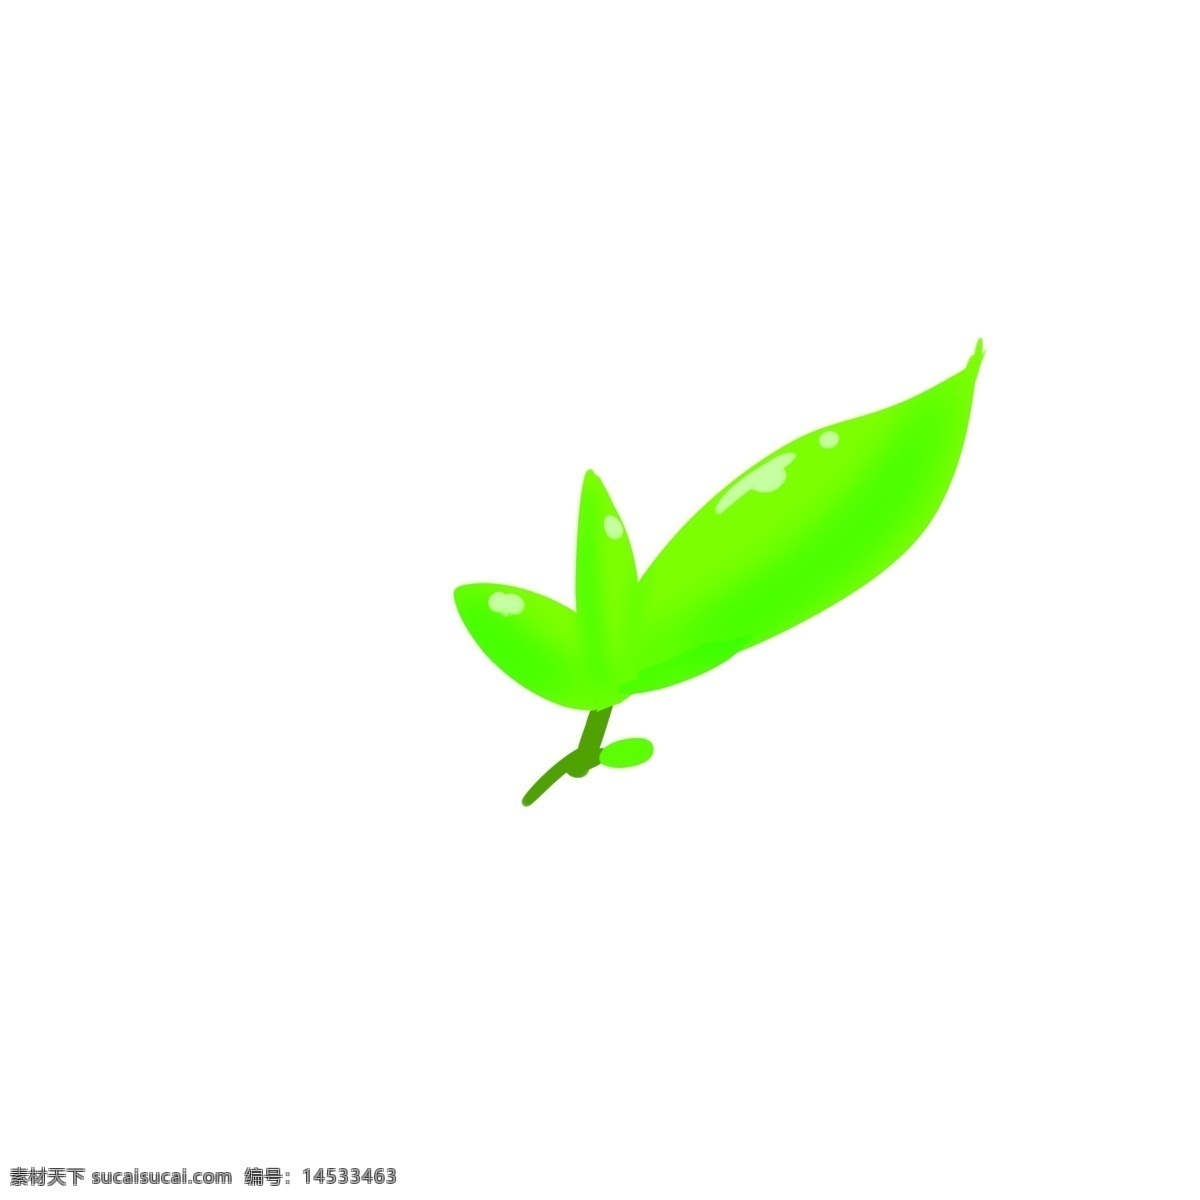 矢量图 创意 树叶 卡通 手绘 绿色 茶叶